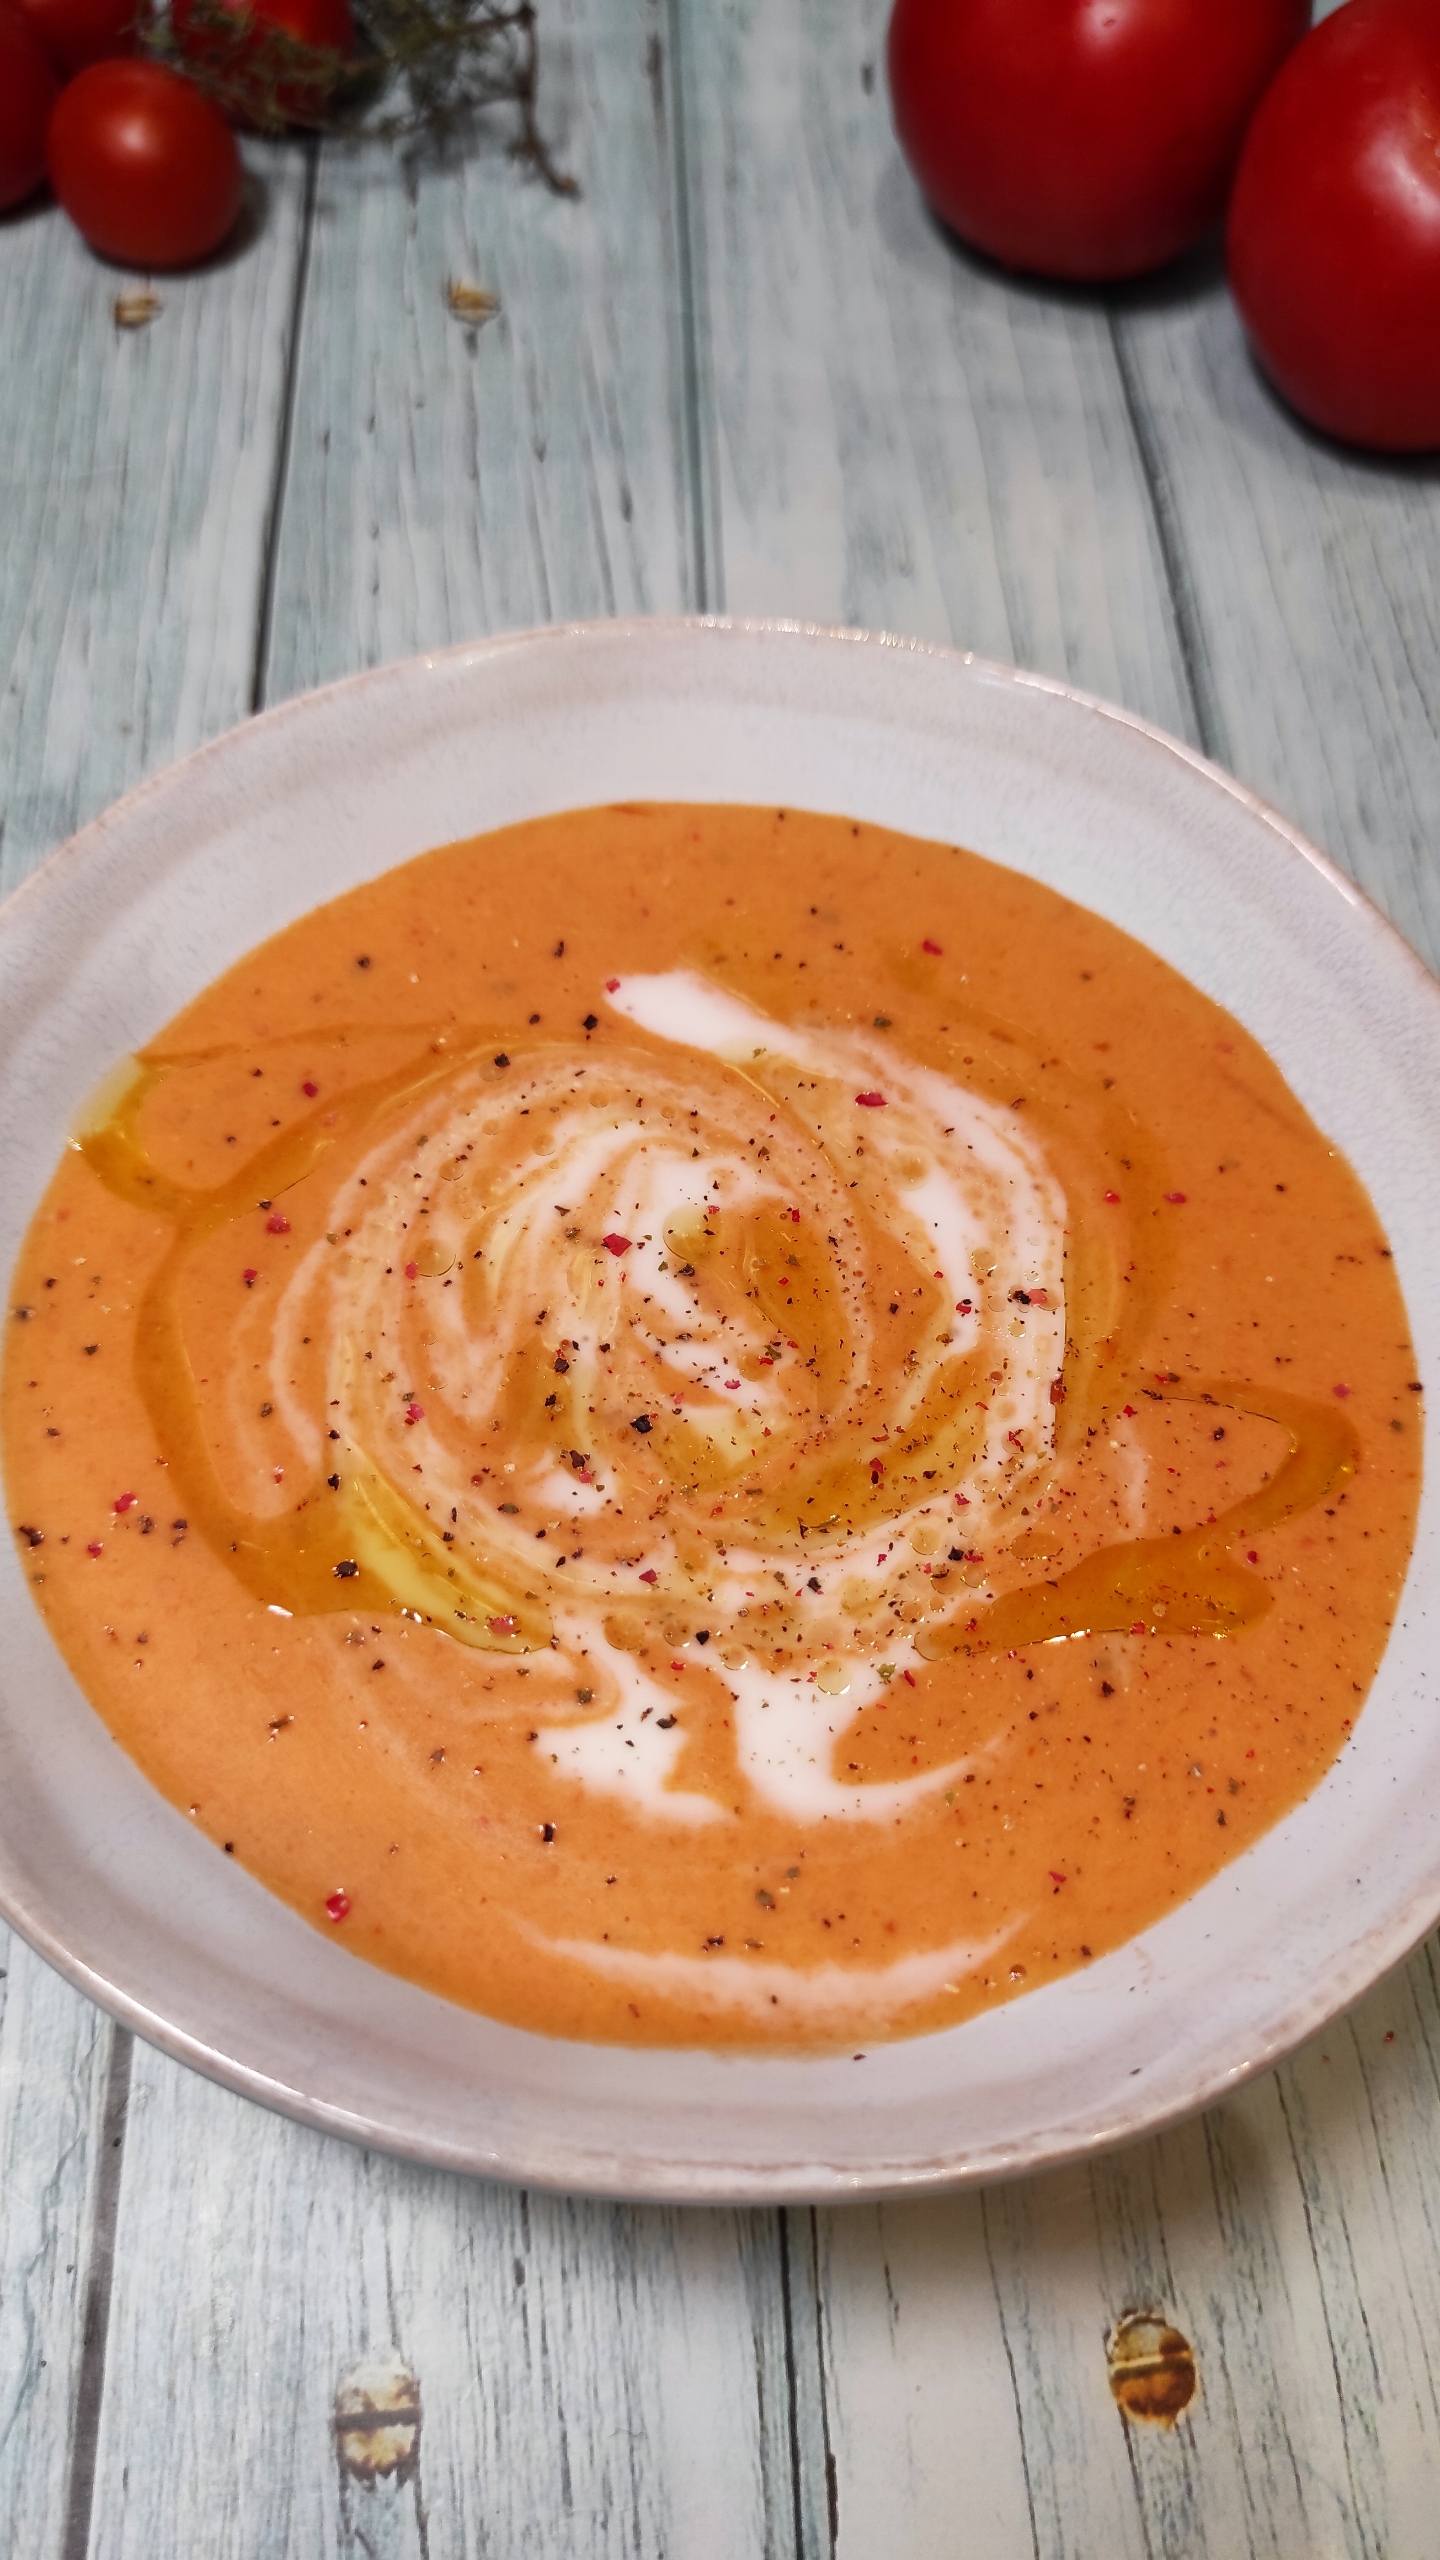 Sopa de tomate, receta saludable - Poesía de Fogón